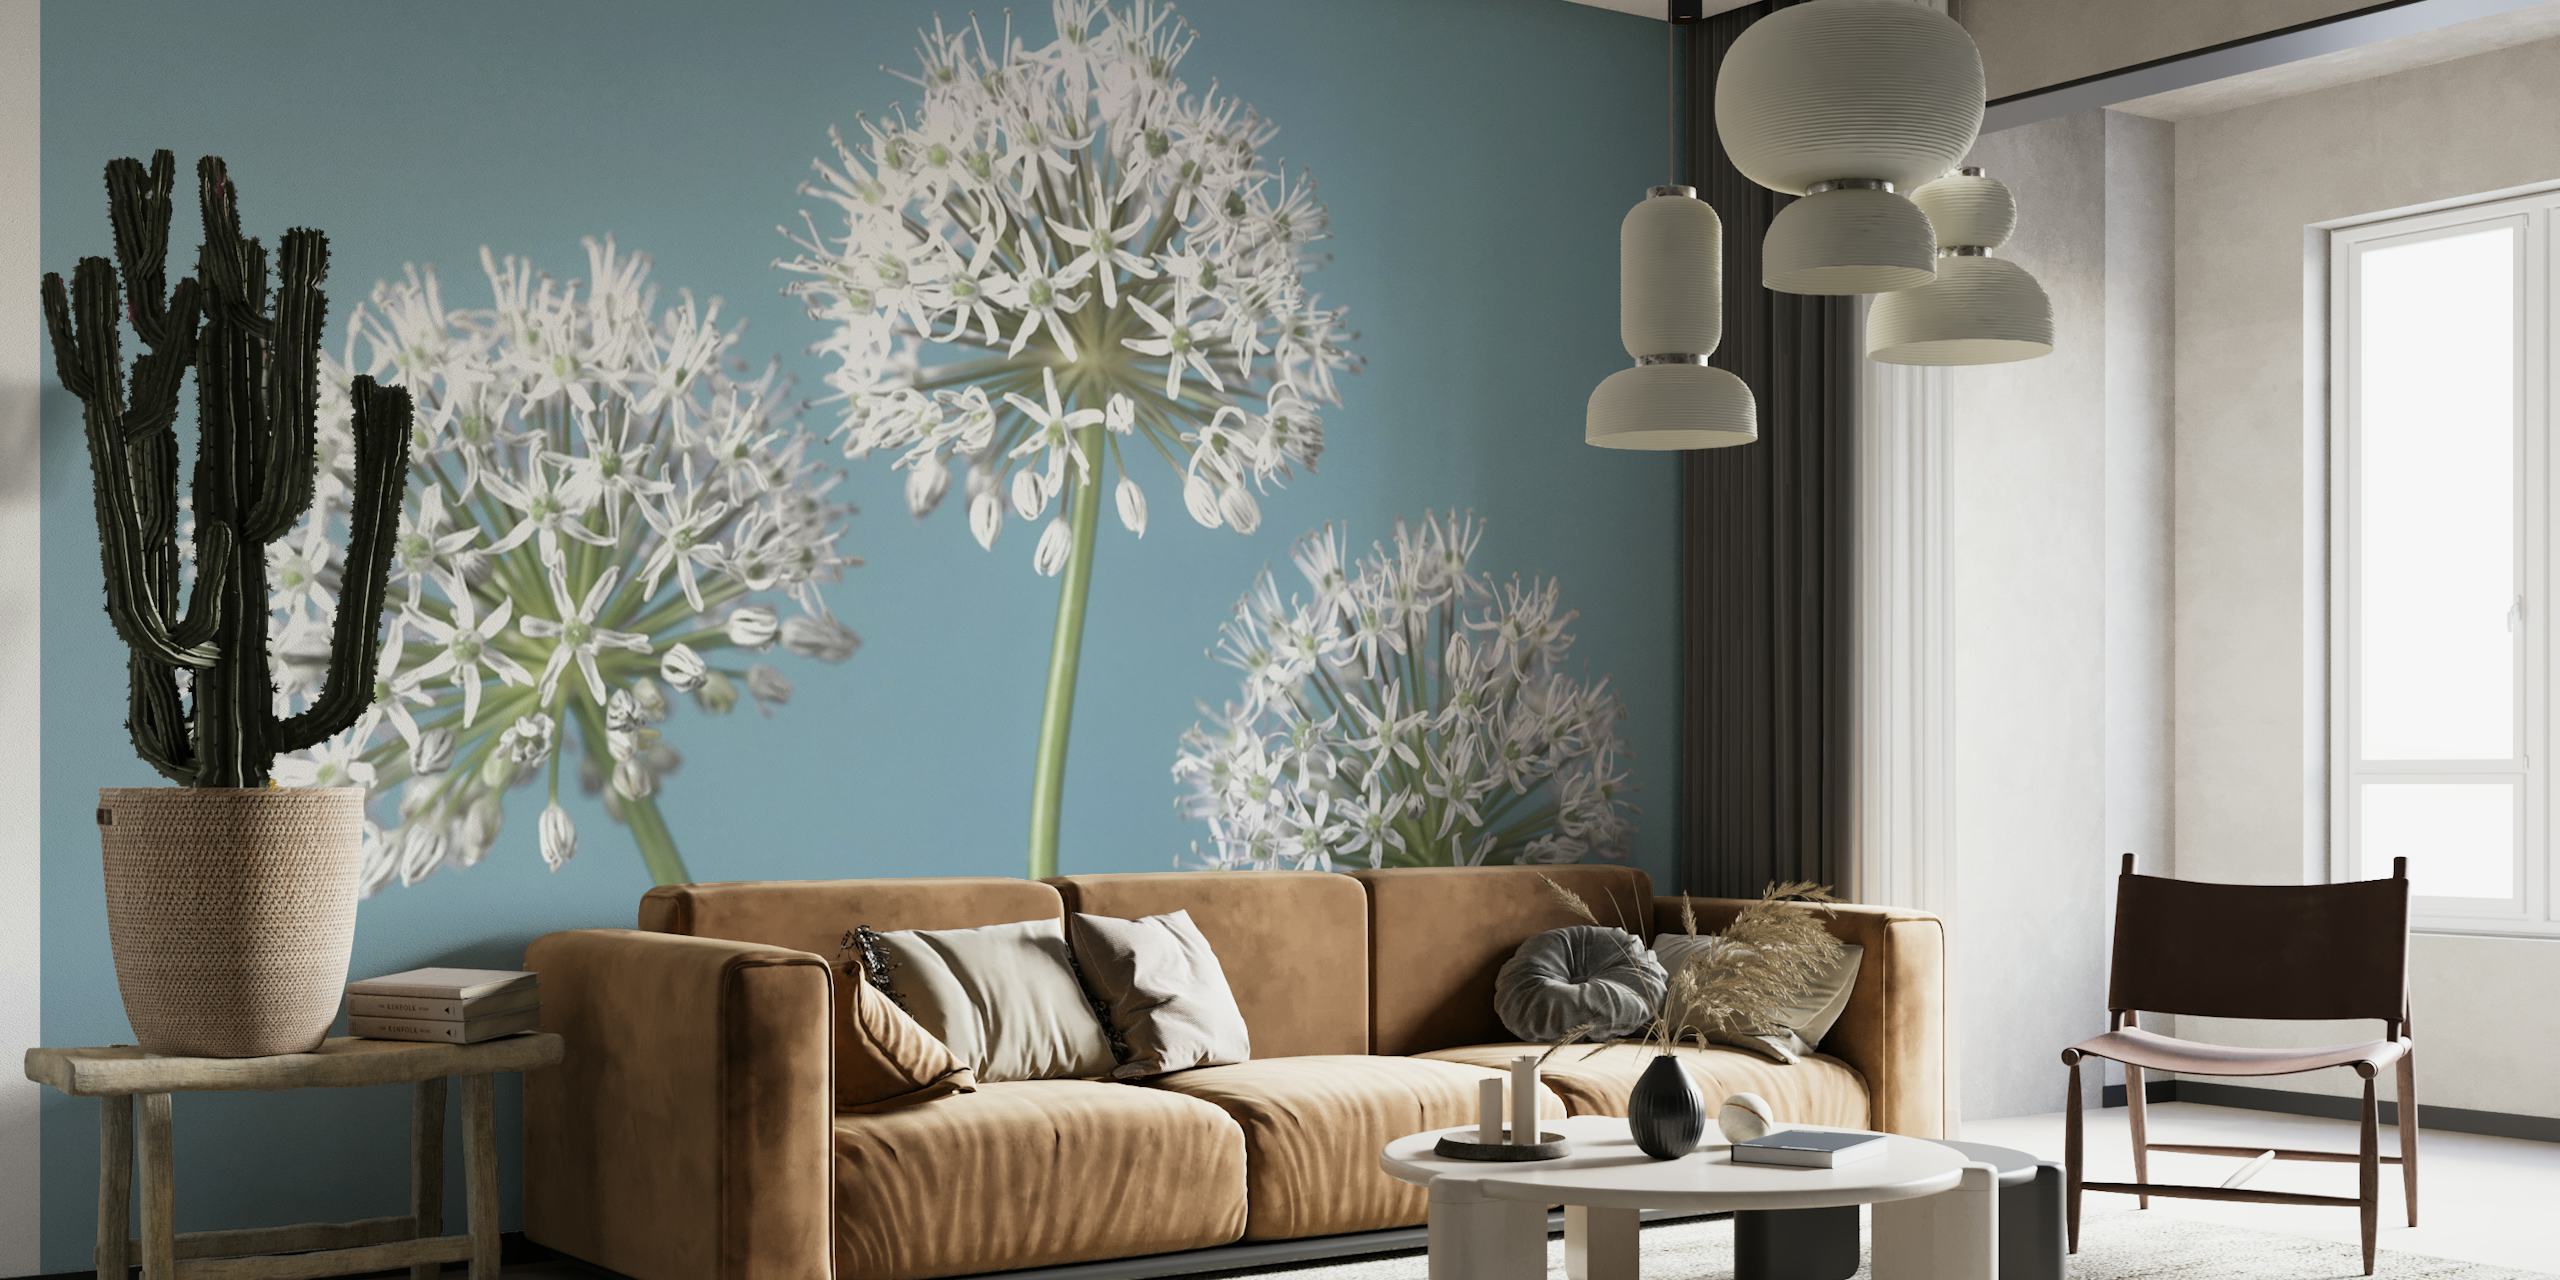 Grillige Allium Trio muurschildering met drie alliumbloemen tegen een blauwe achtergrond.